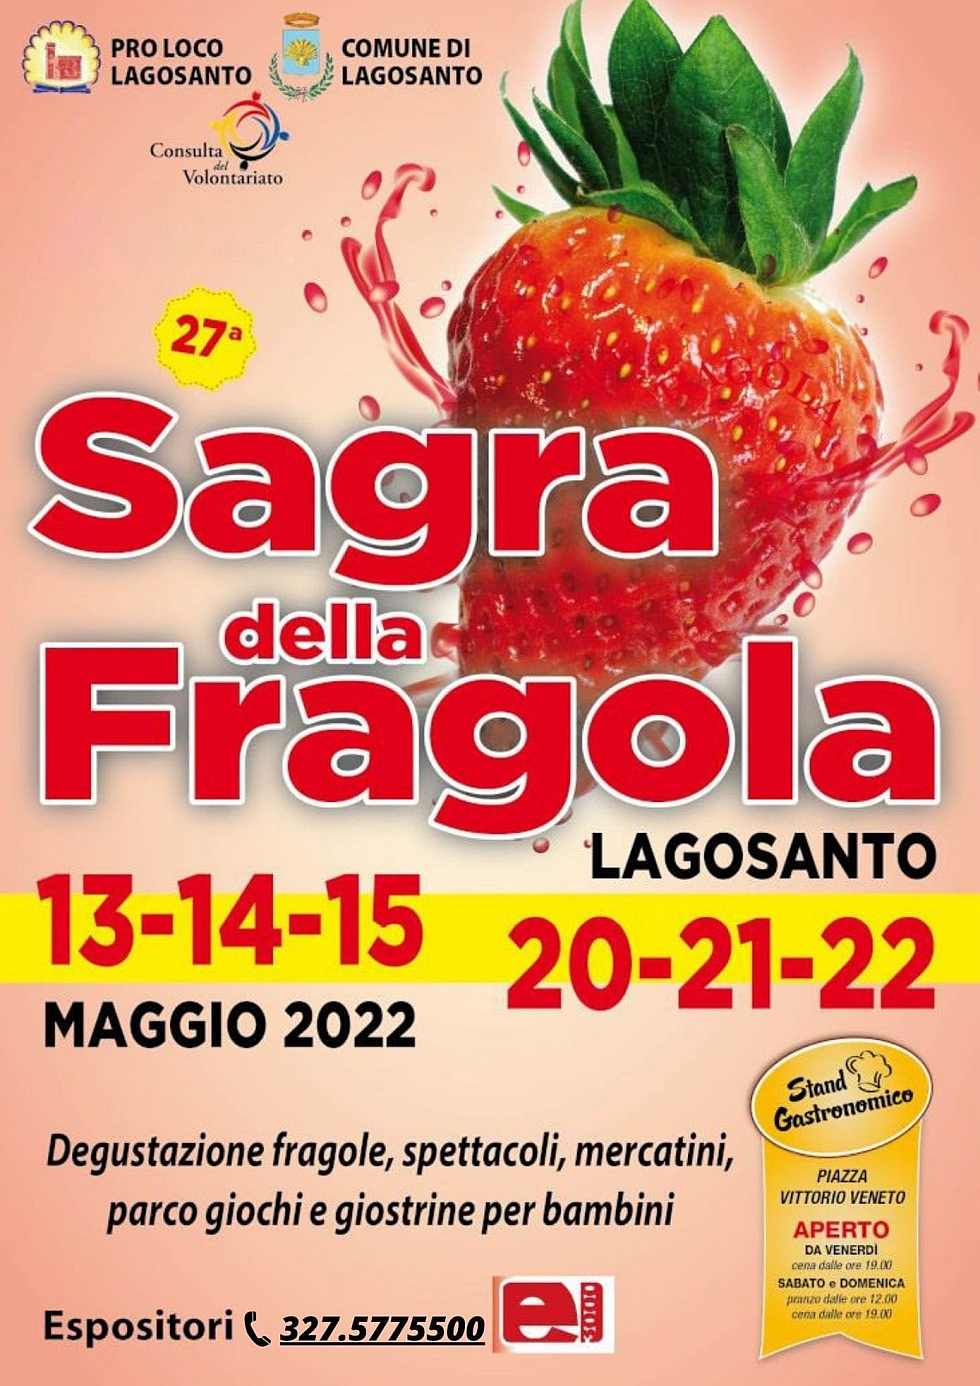 Lagosanto (FE)
"27^ Sagra della Fragola" 
13-14-15 • 20-21-22 Maggio 2022